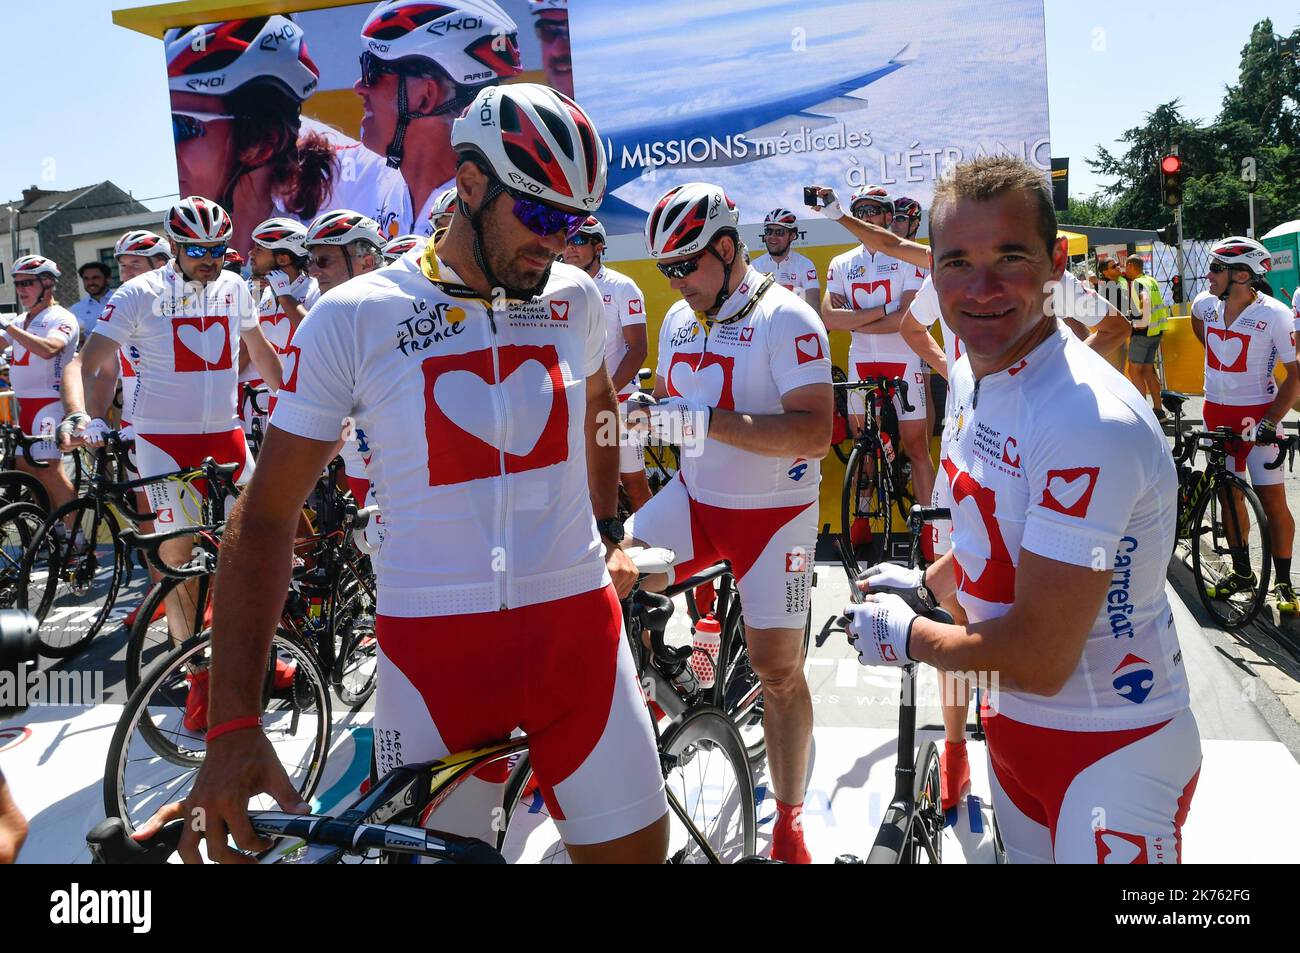 Mecenat chirurgie cardiaque - Tour de France 2018 - gara ciclistica si svolge dal 7th al 29th 2018 luglio. 21 fasi - 3 351kms - Foto Stock